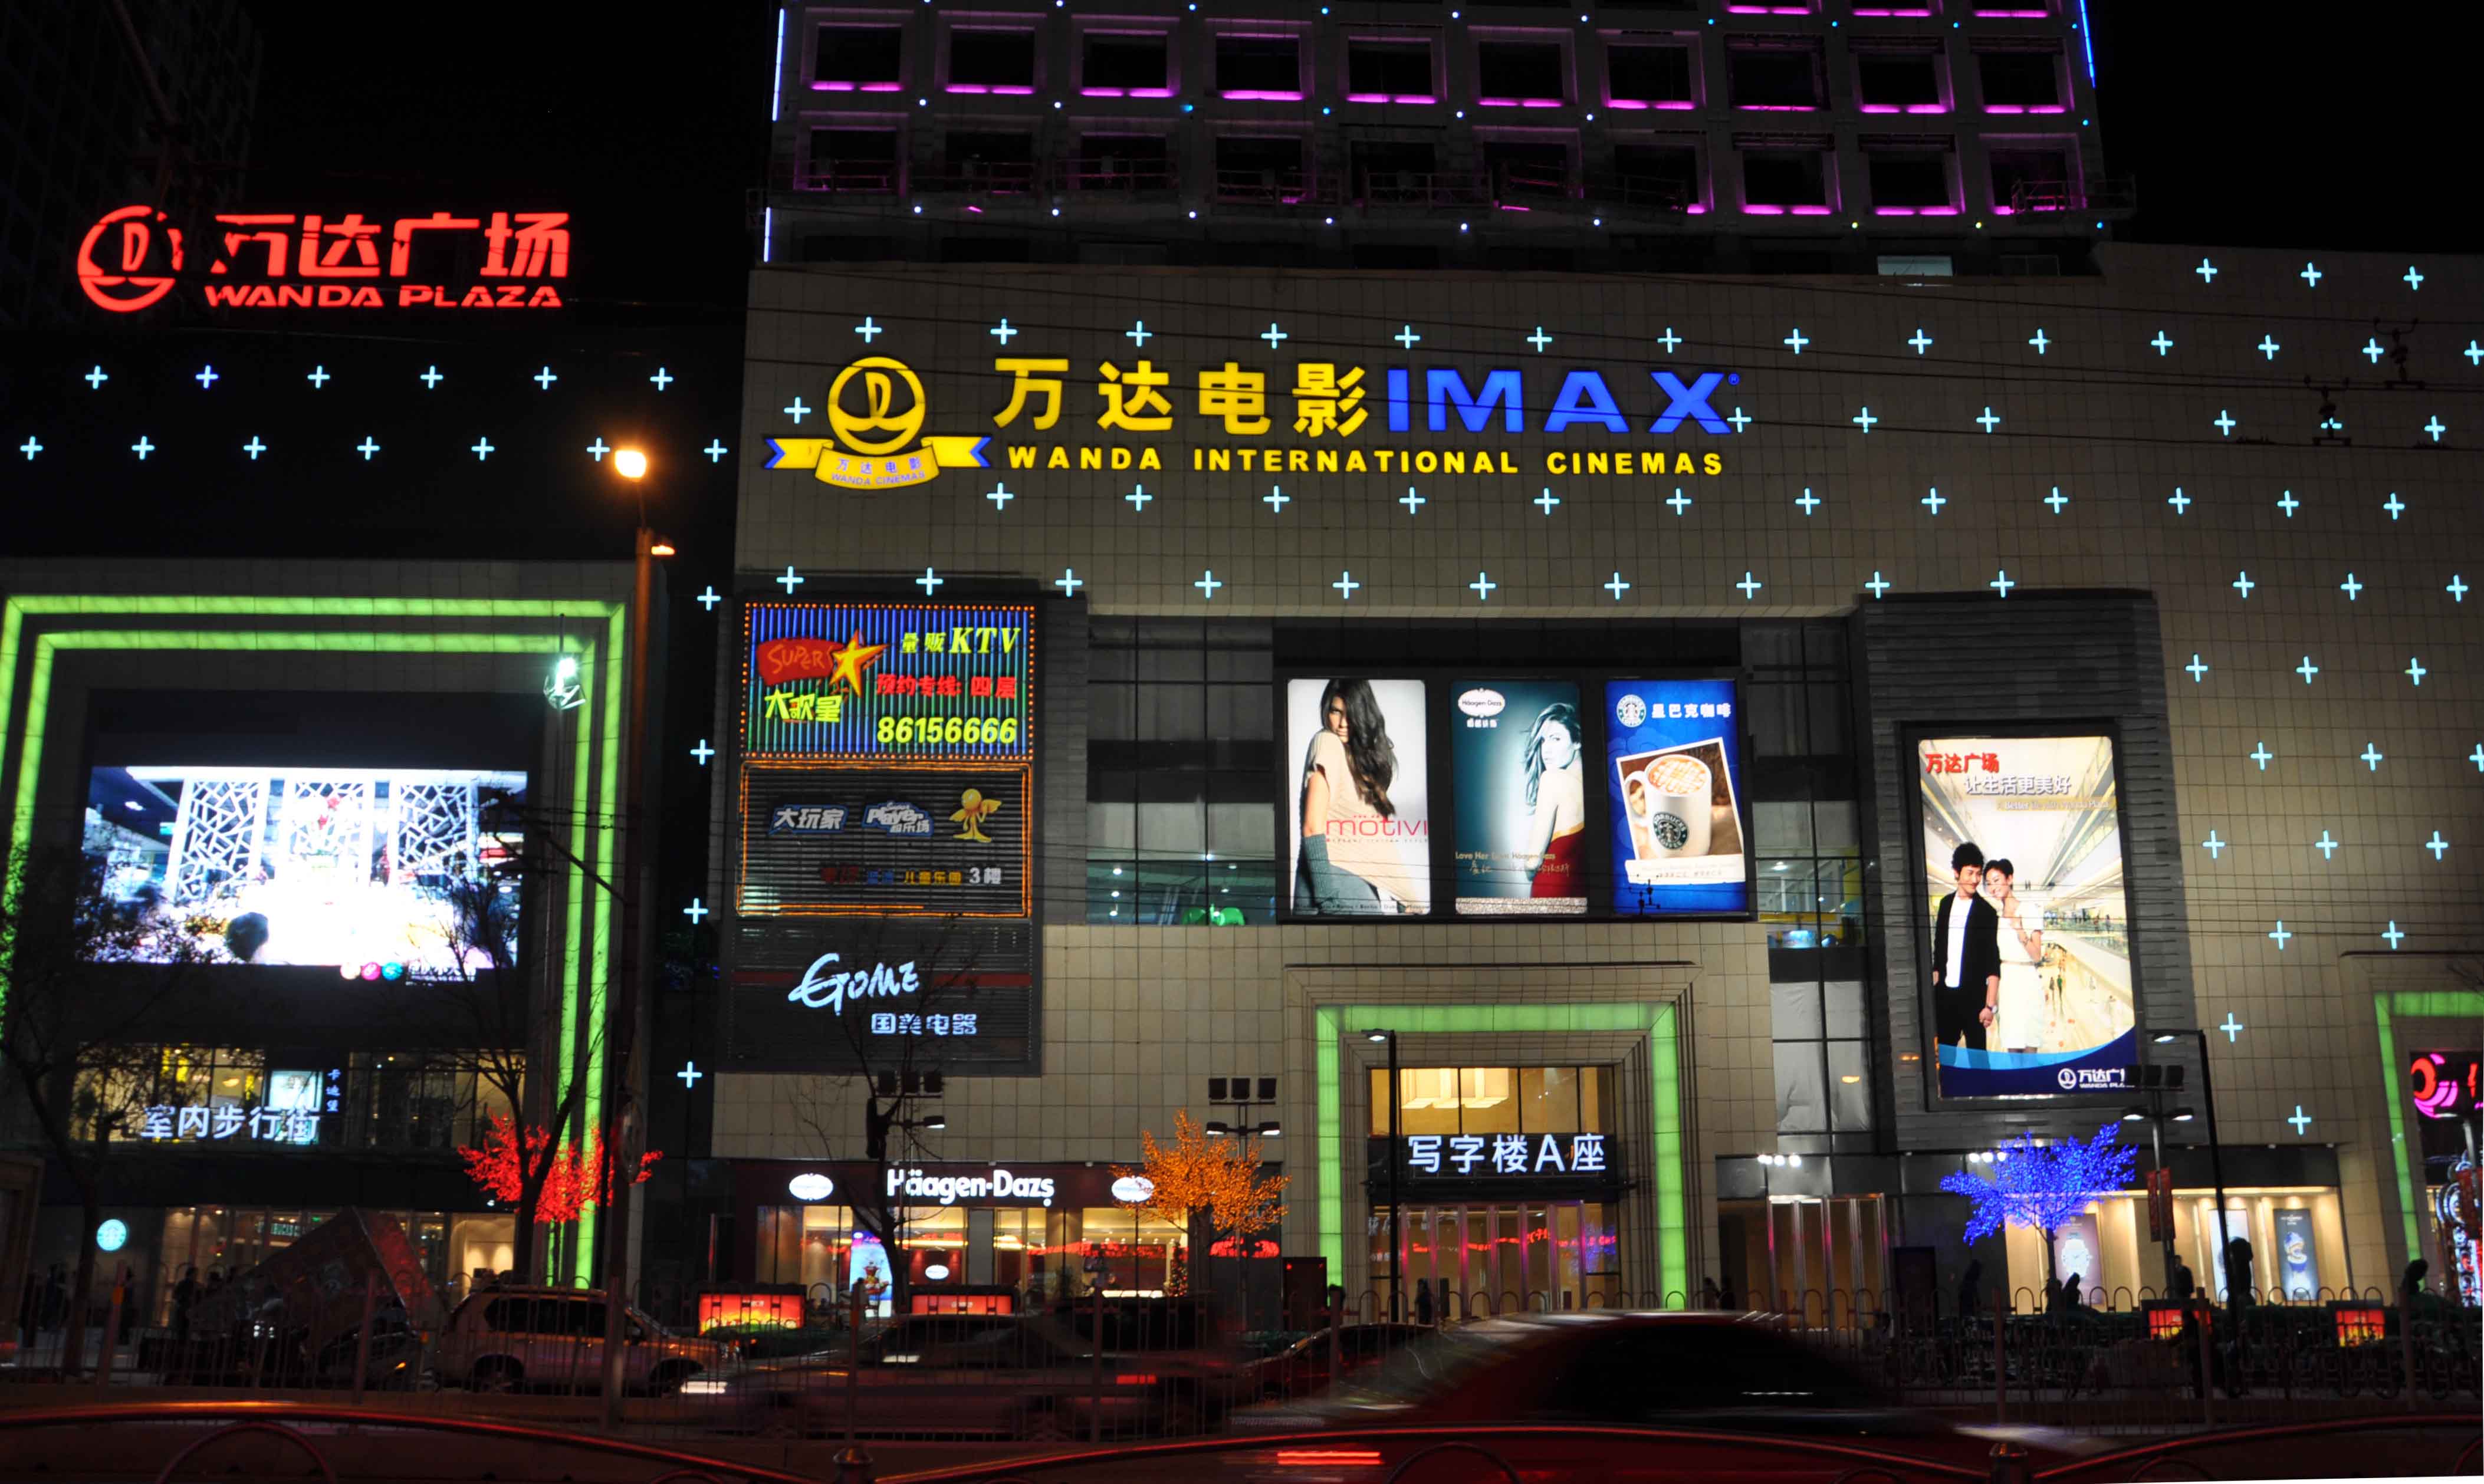 万达影城 IMAX 电影院-罐头图库